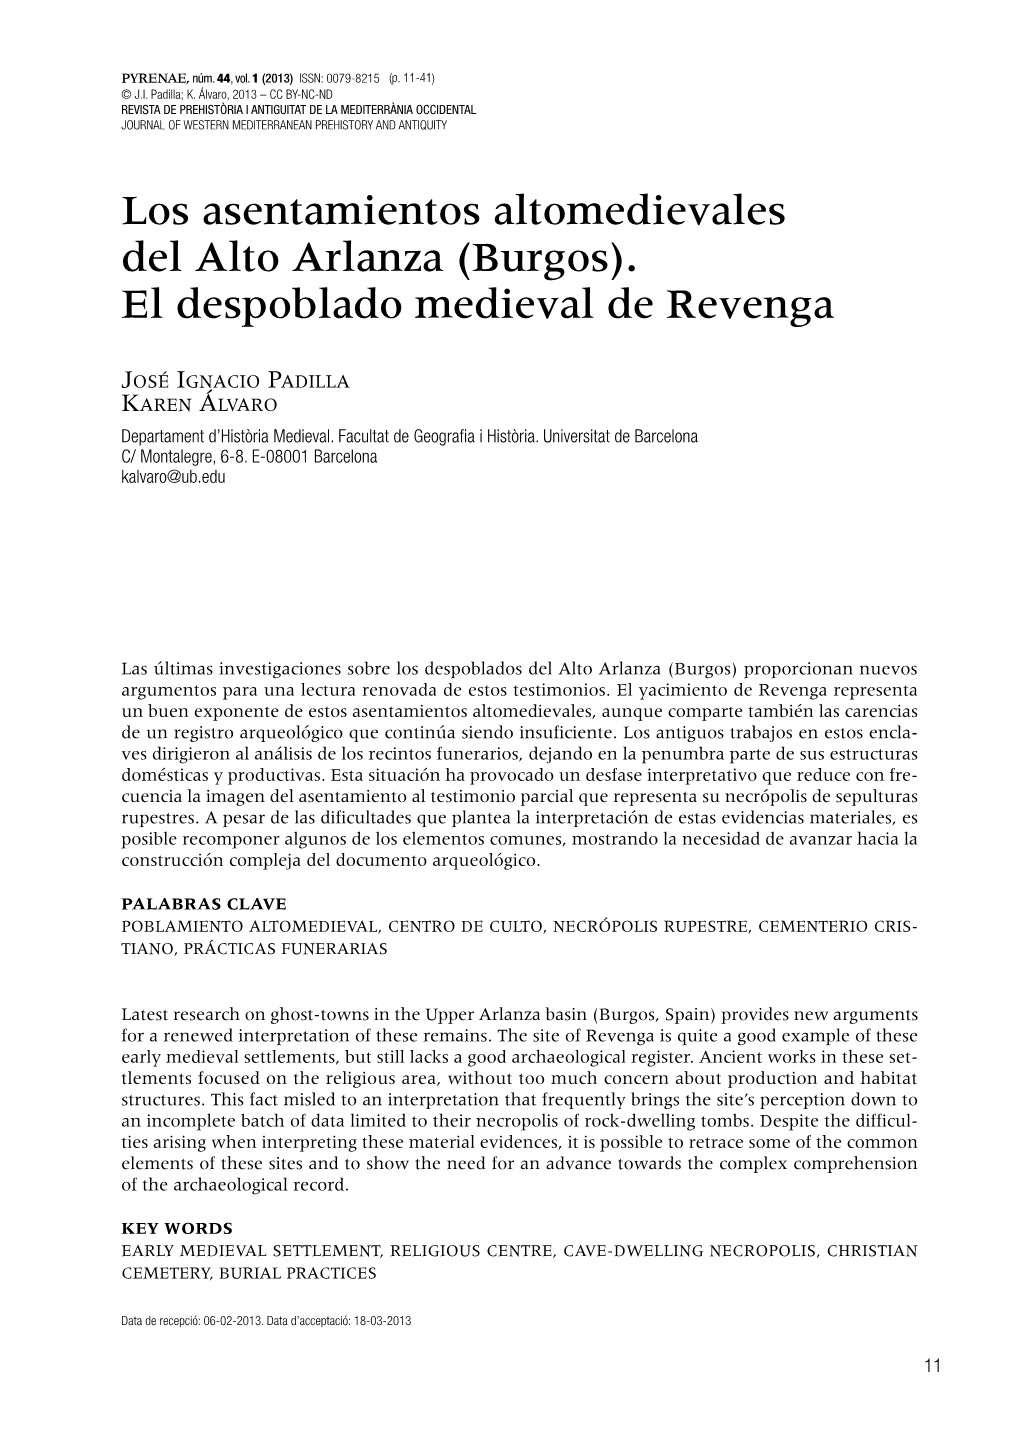 Los Asentamientos Altomedievales Del Alto Arlanza (Burgos). El Despoblado Medieval De Revenga